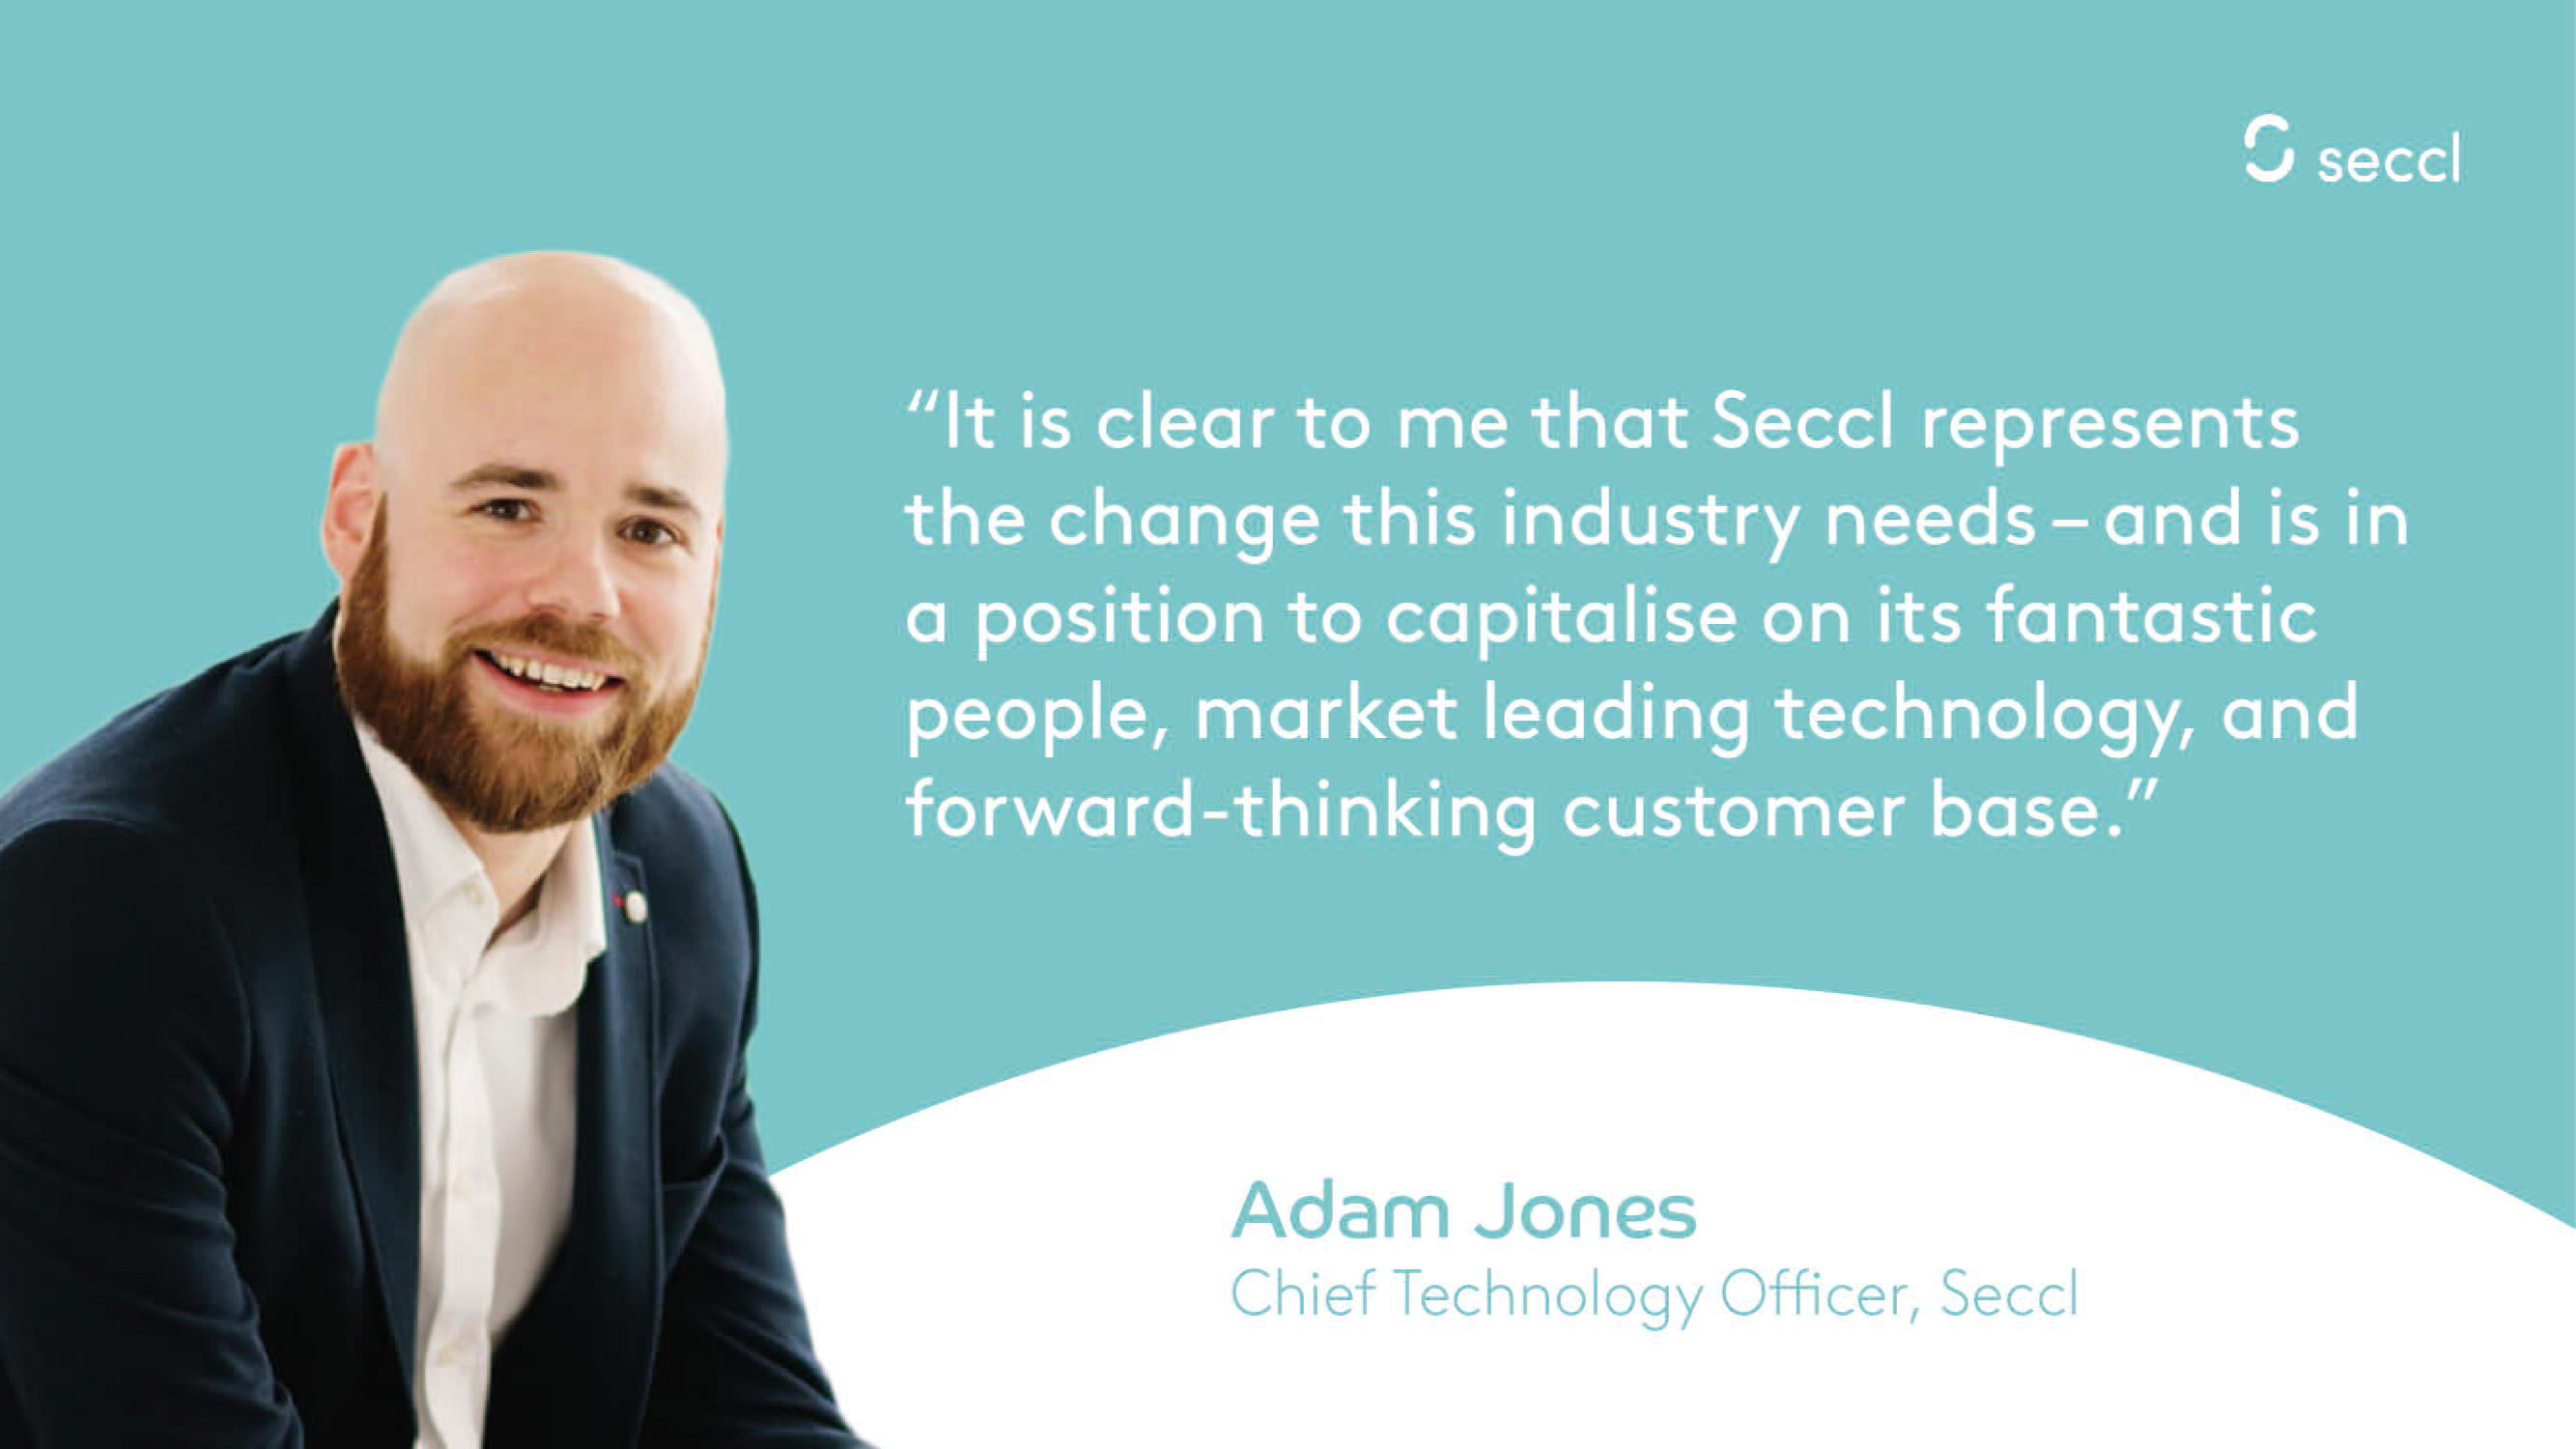 Big news! Meet our new Chief Technology Officer, Adam Jones